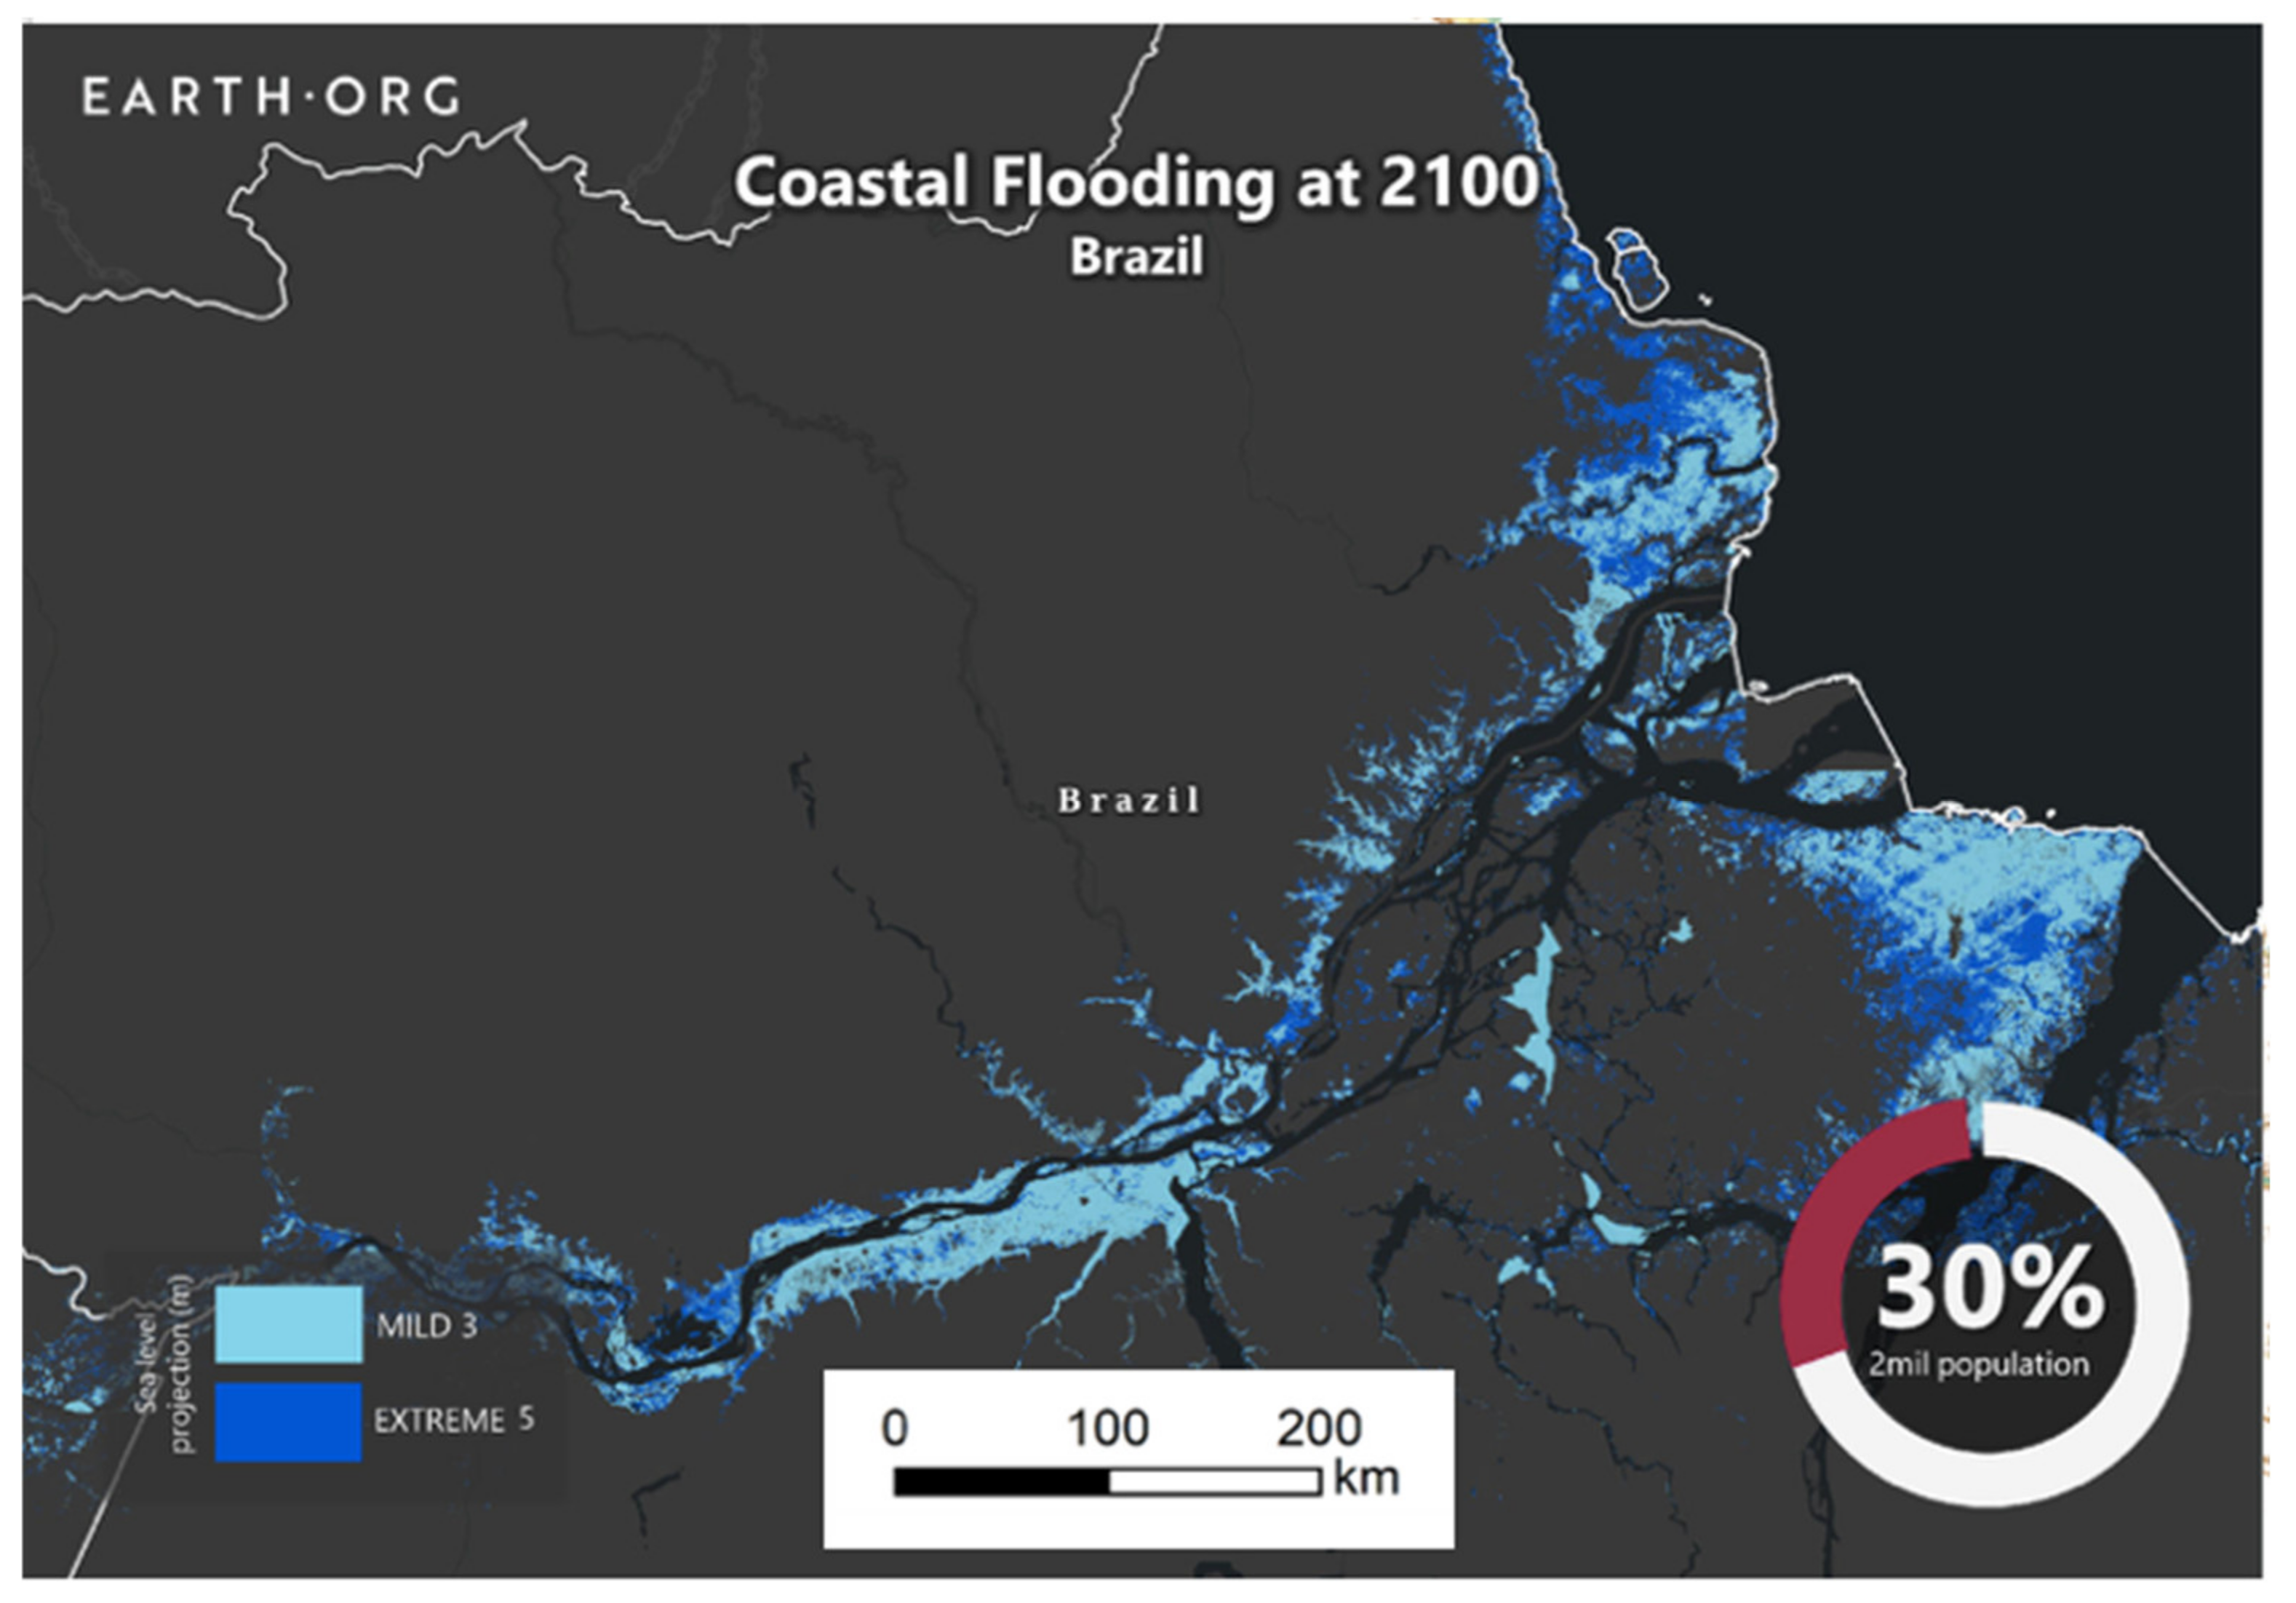 amazon river delta map